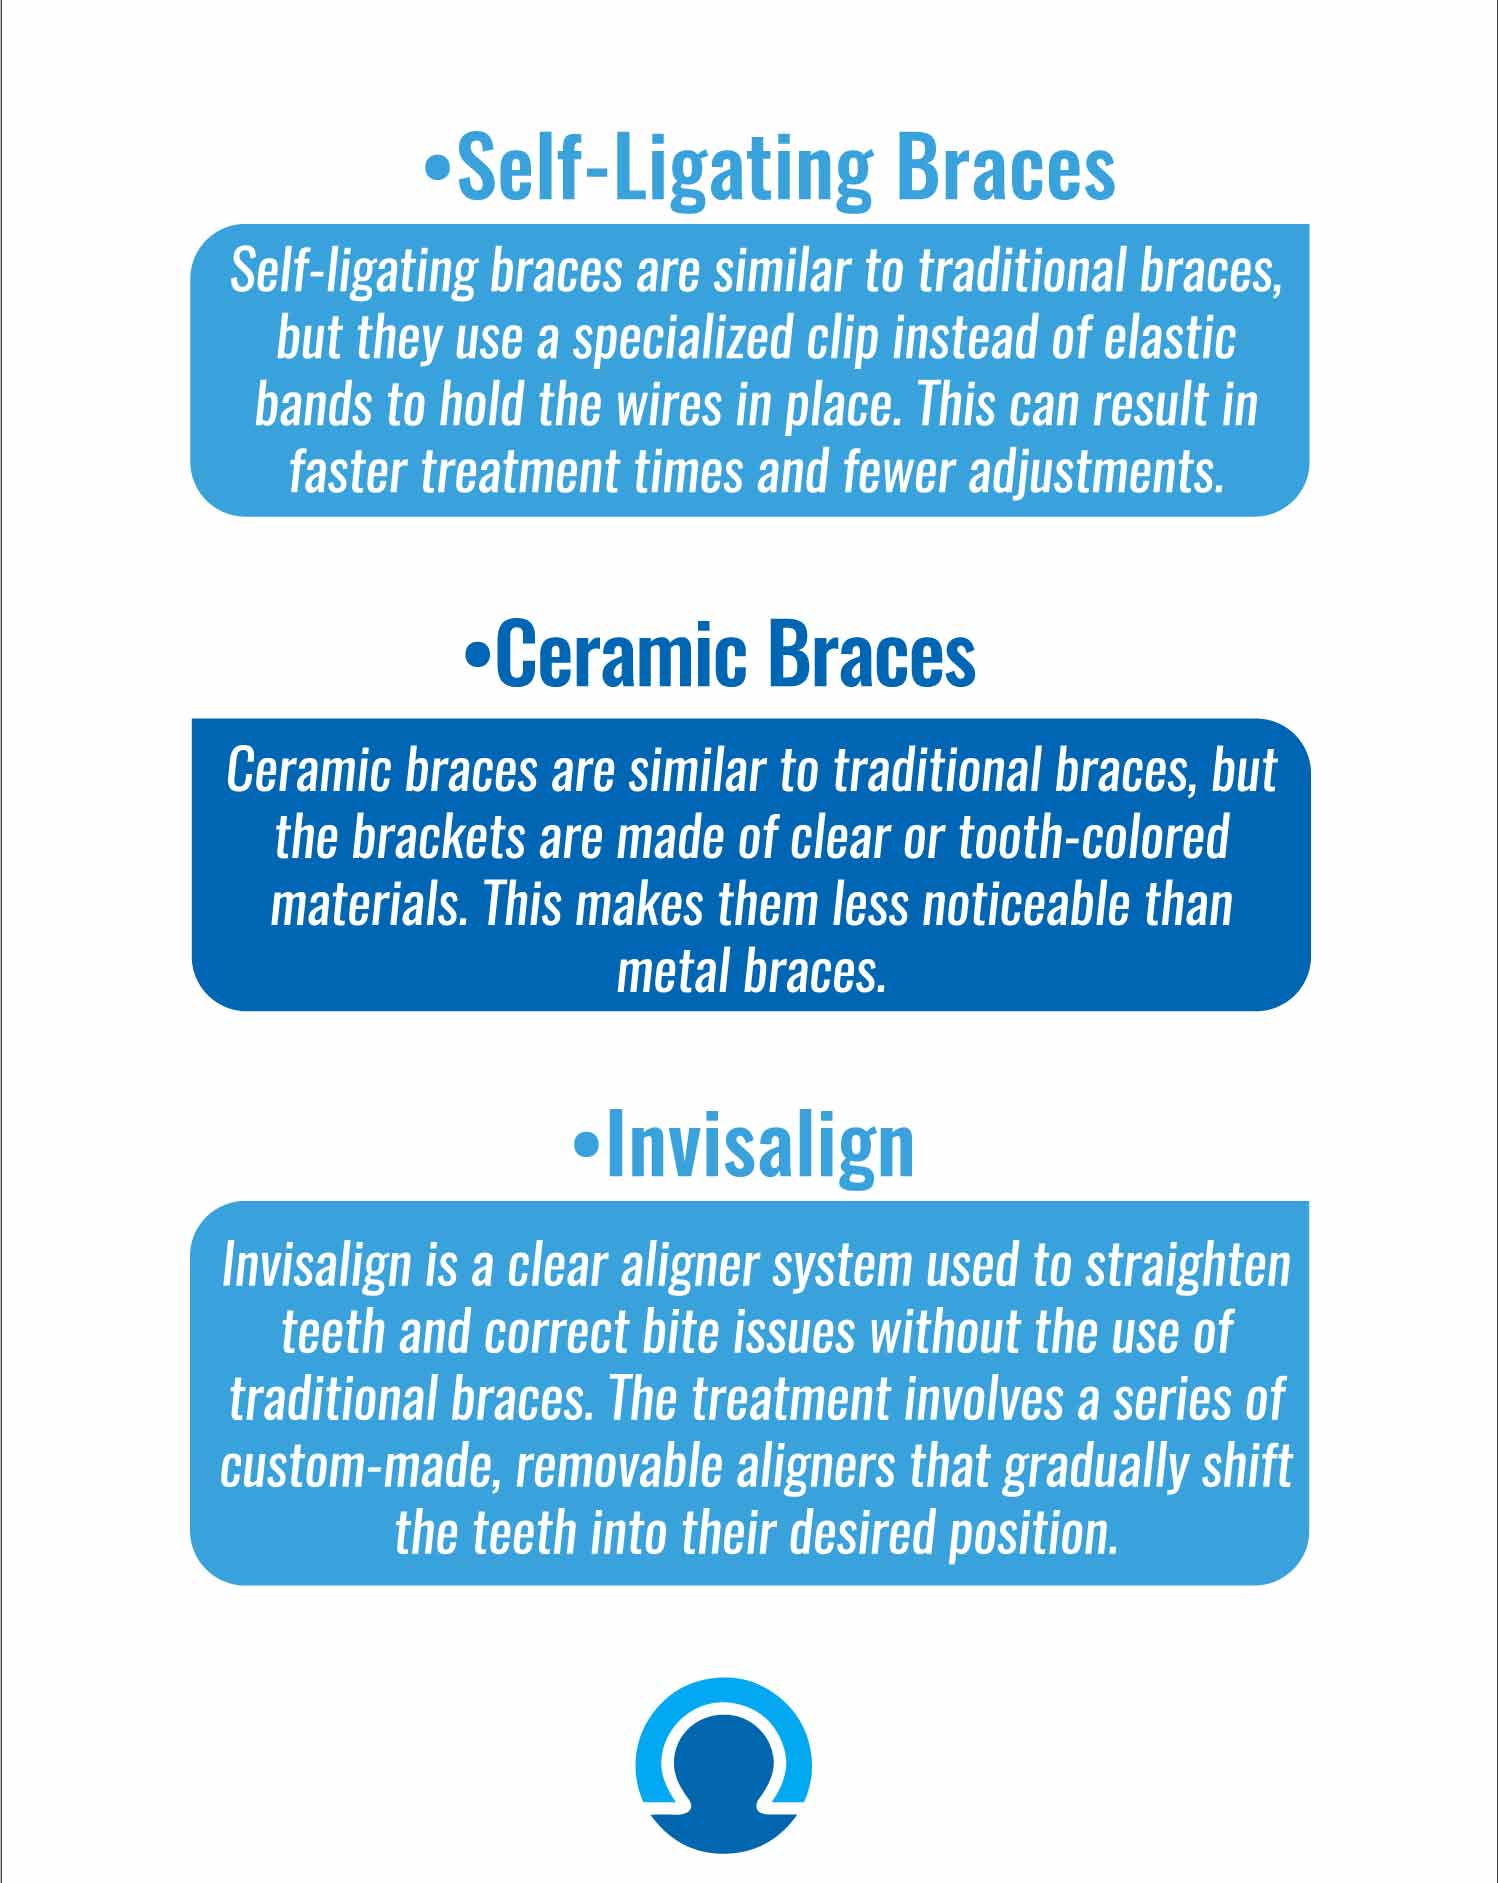 Types of Orthodontics